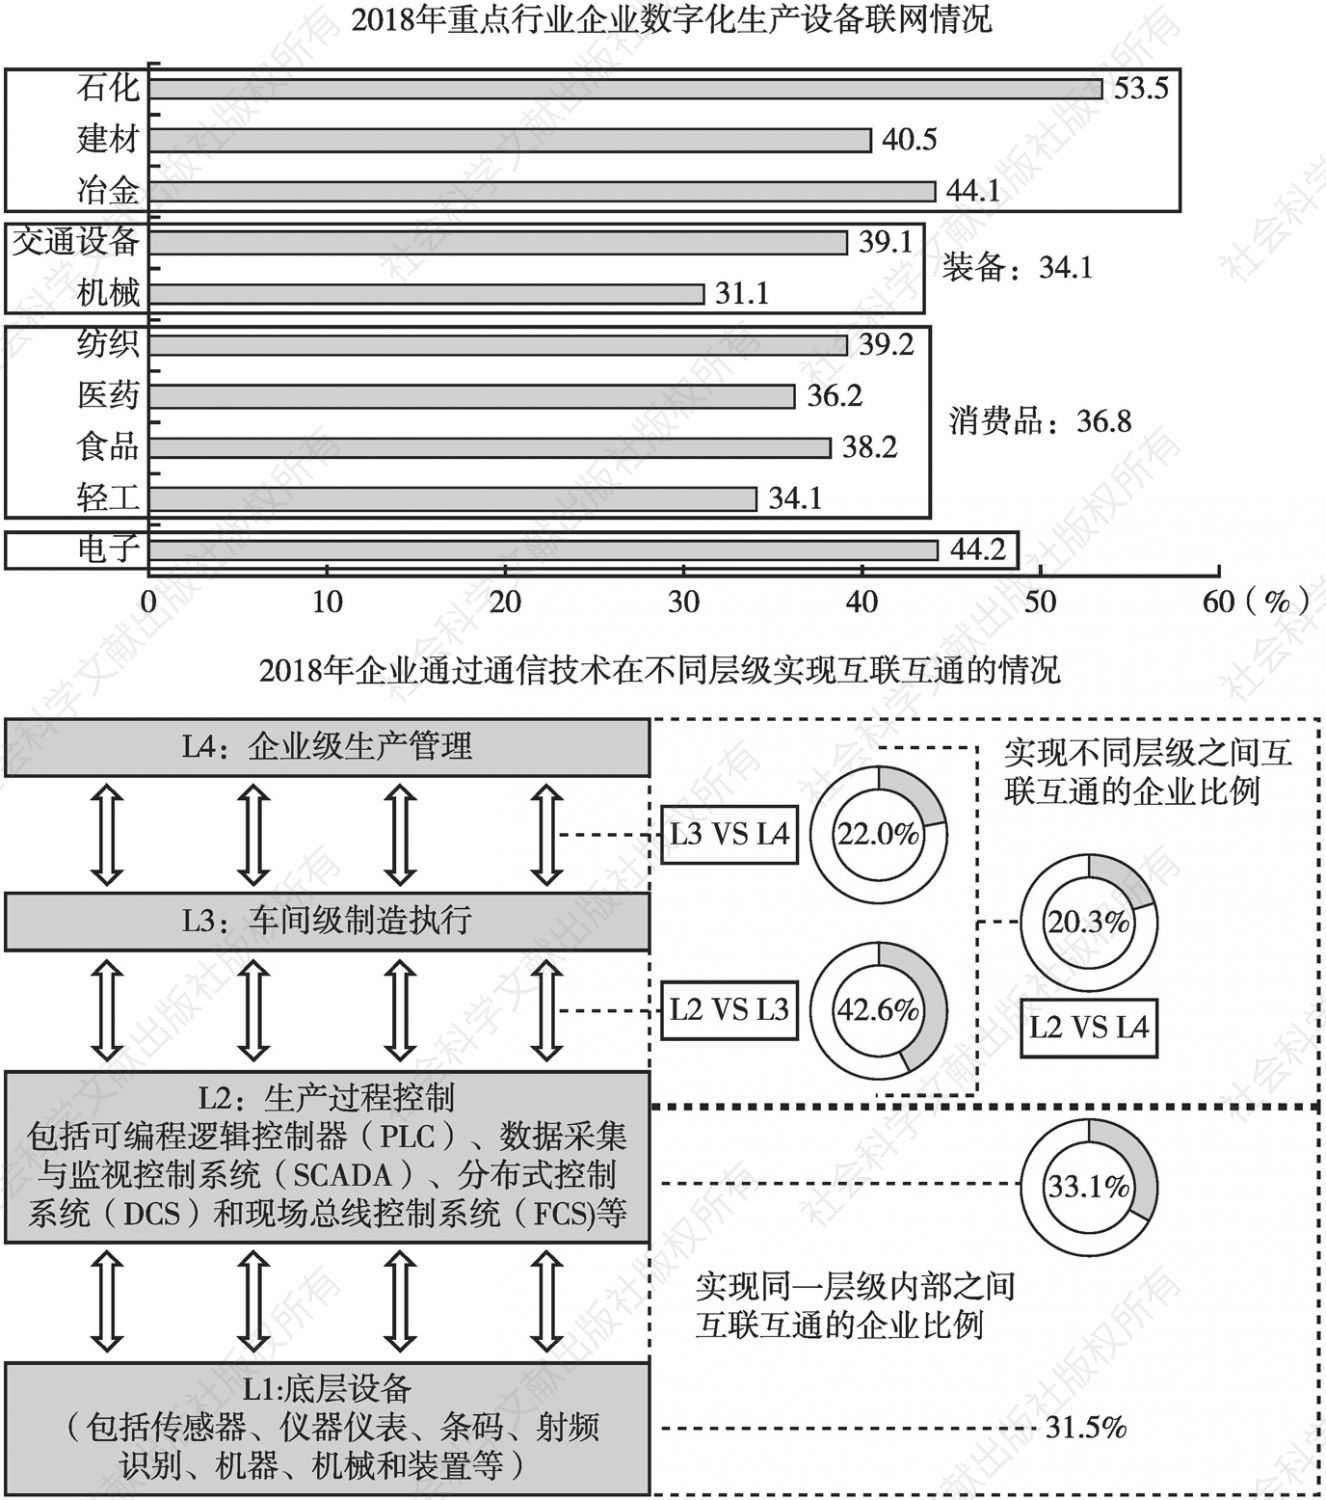 图6 中国底层装备联网和生产制造过程纵向互联互通情况分析